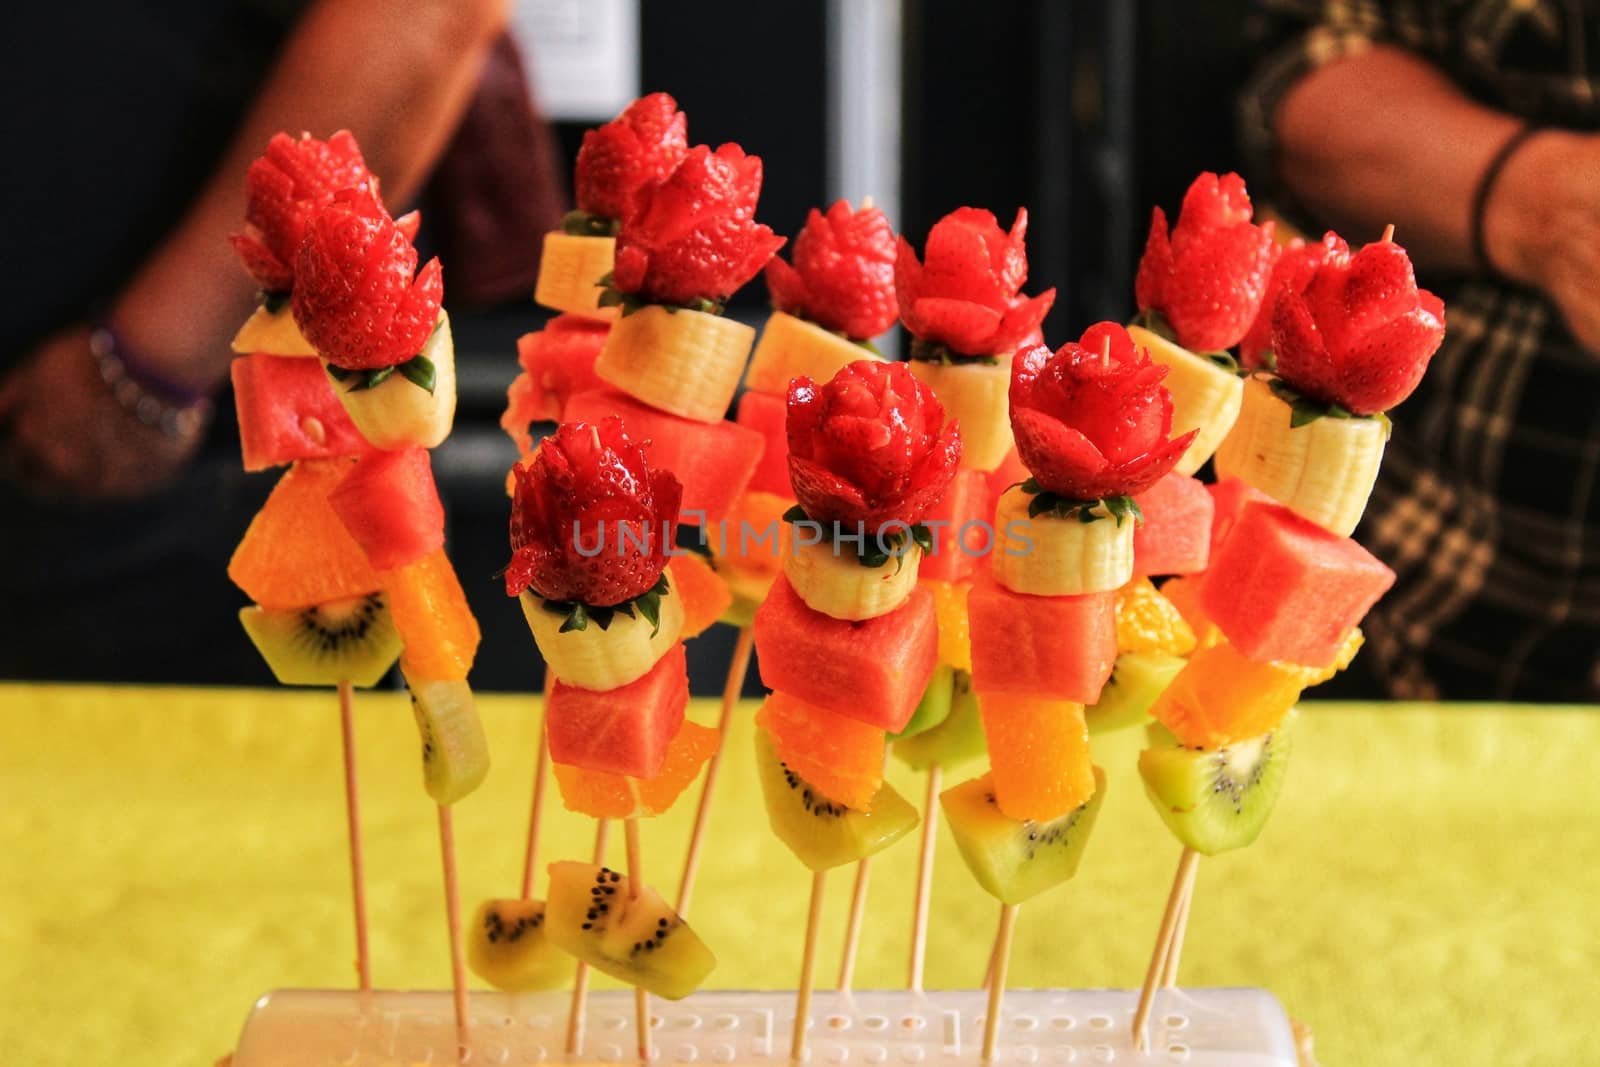 Colorful fruit skewers by soniabonet